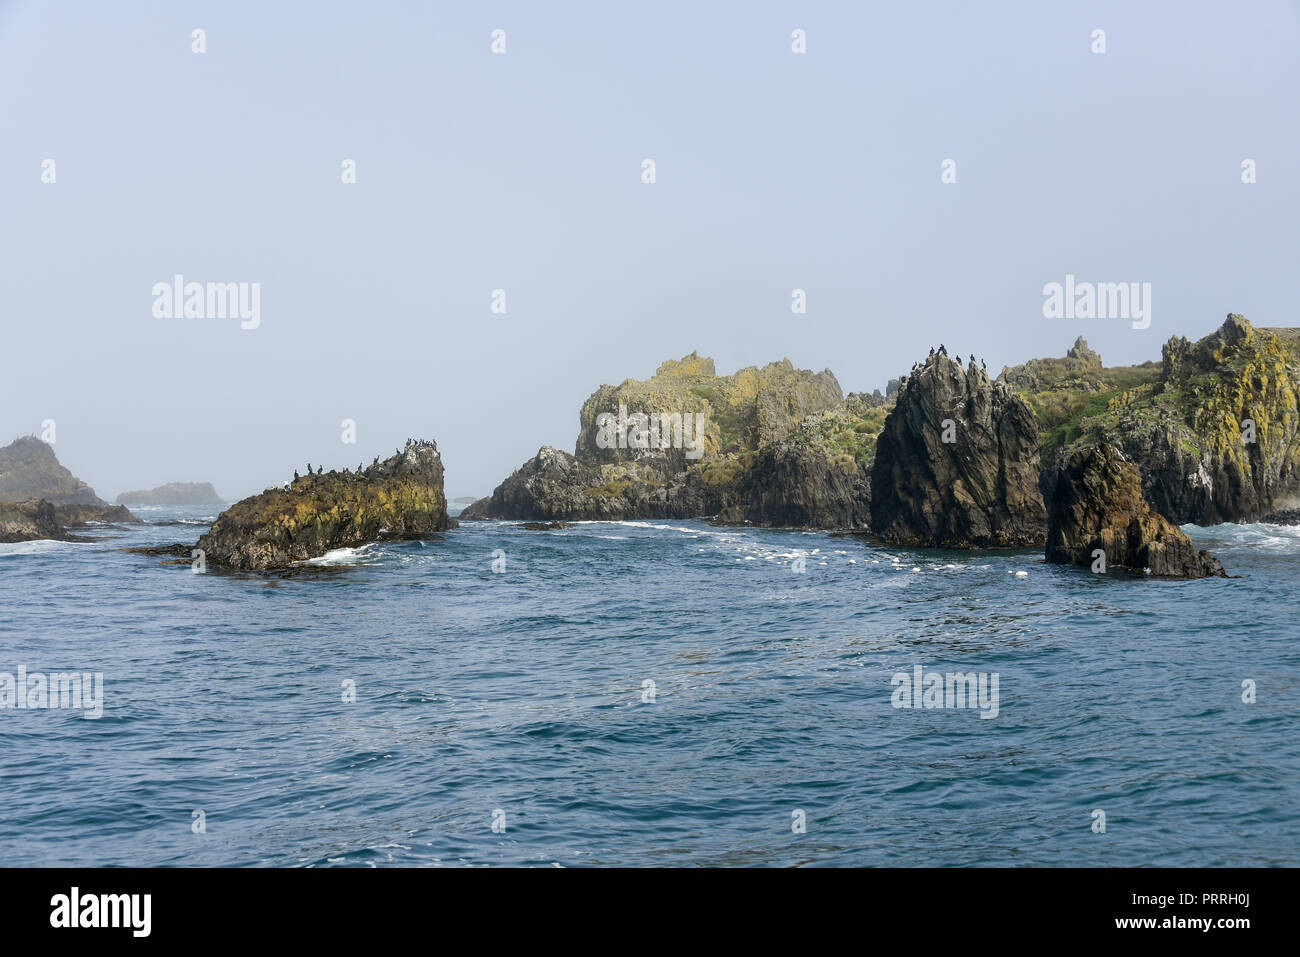 Patrimonio Natural de la Humanidad Islotes de Puñihuil, extrañas formaciones rocosas, Bird Rock, Bahia Puñihuil, Isla de Chiloé, Chile Foto de stock